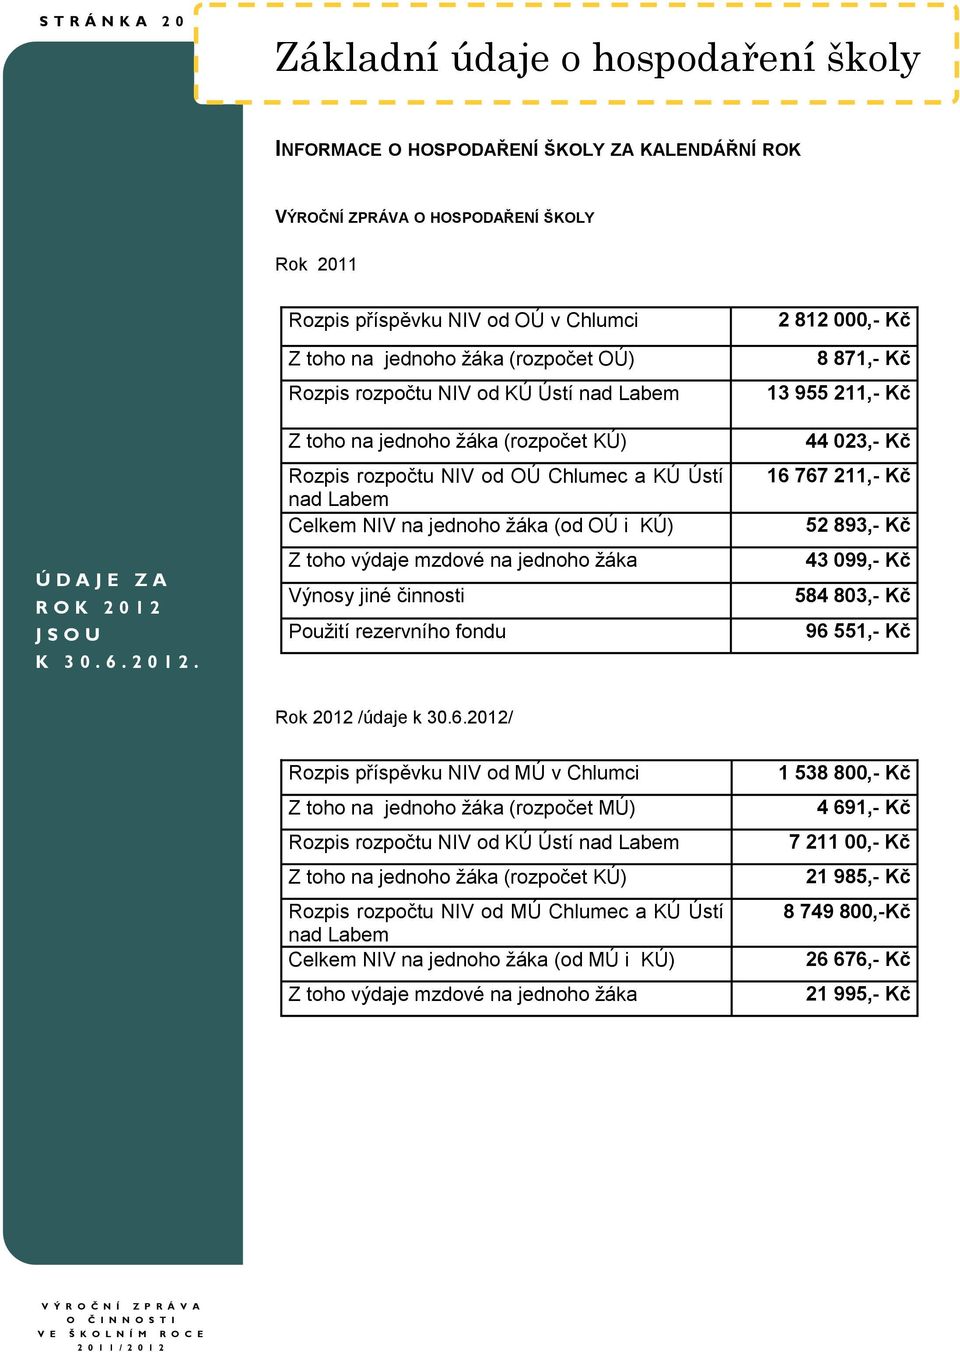 Rozpis příspěvku NIV od OÚ v Chlumci Z toho na jednoho žáka (rozpočet OÚ) Rozpis rozpočtu NIV od KÚ Ústí nad Labem Z toho na jednoho žáka (rozpočet KÚ) Rozpis rozpočtu NIV od OÚ Chlumec a KÚ Ústí nad